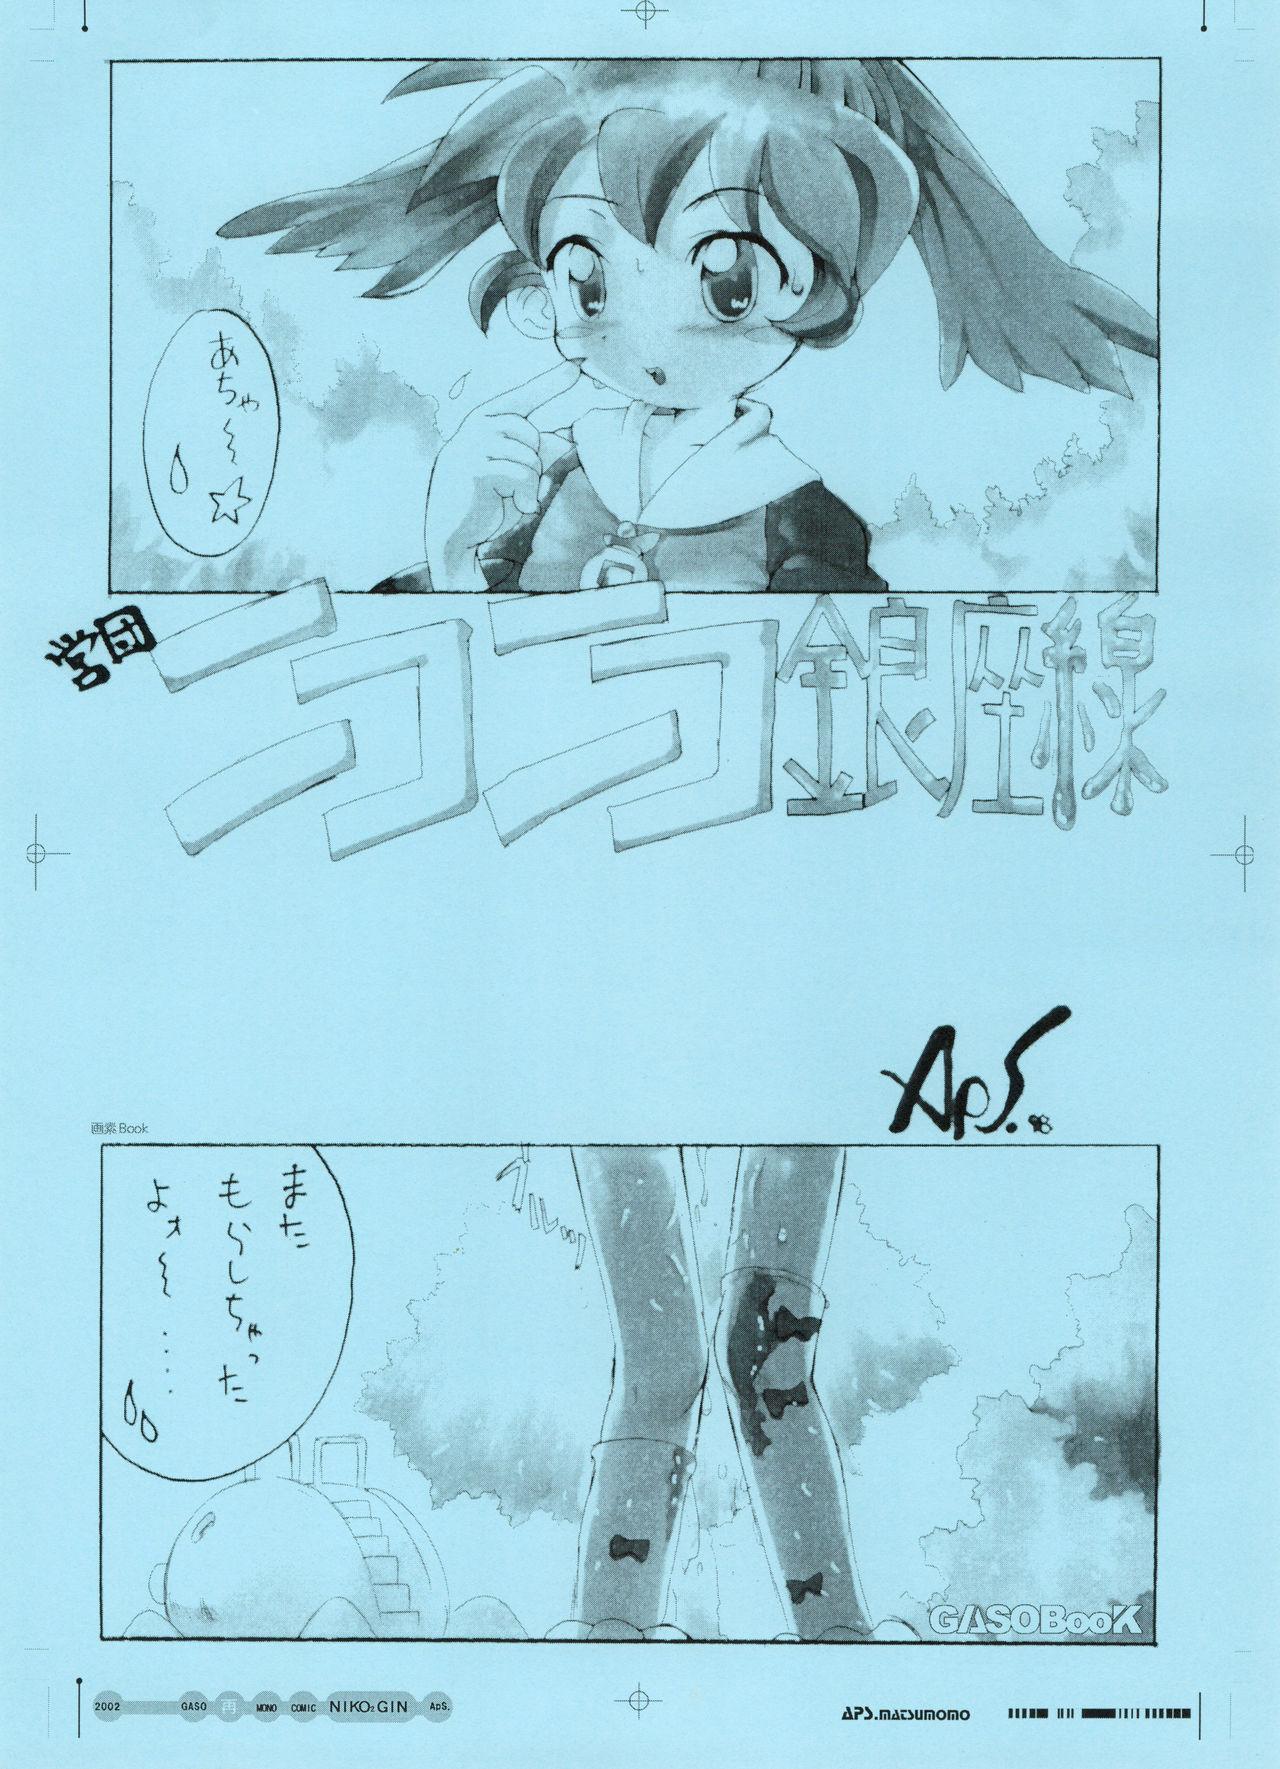 GASOBooK Genkou Youshi Kidz AnimeTronica'Z -0208 9